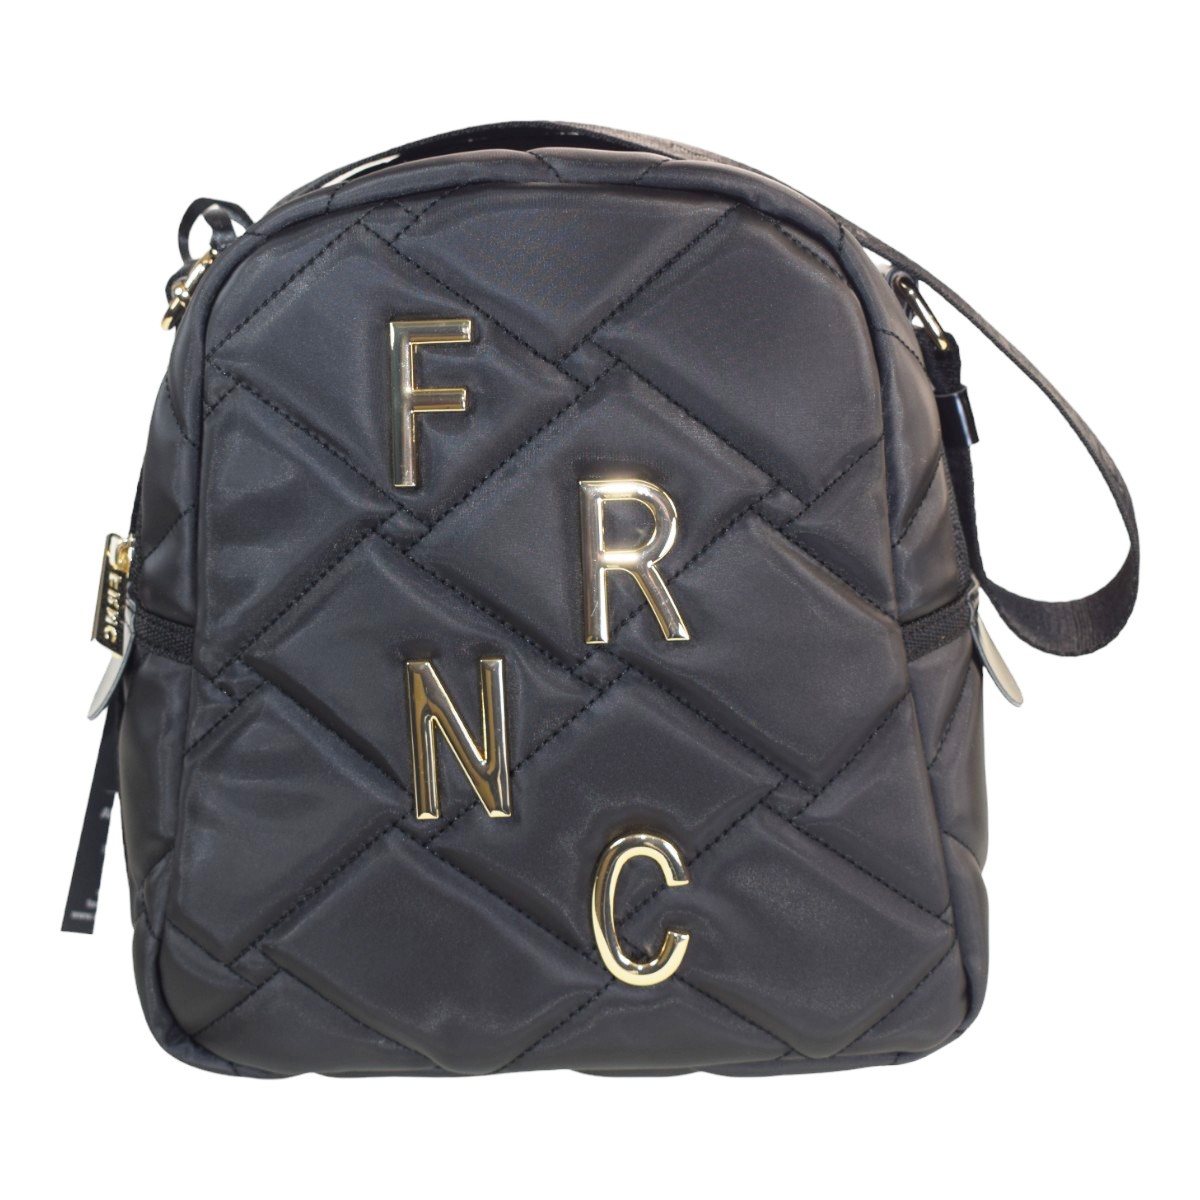 FRNC FRANCESCO Τσάντα Γυναικεία Πλάτης-Backpack Ώμου 4823 BLK Μαύρο 4823